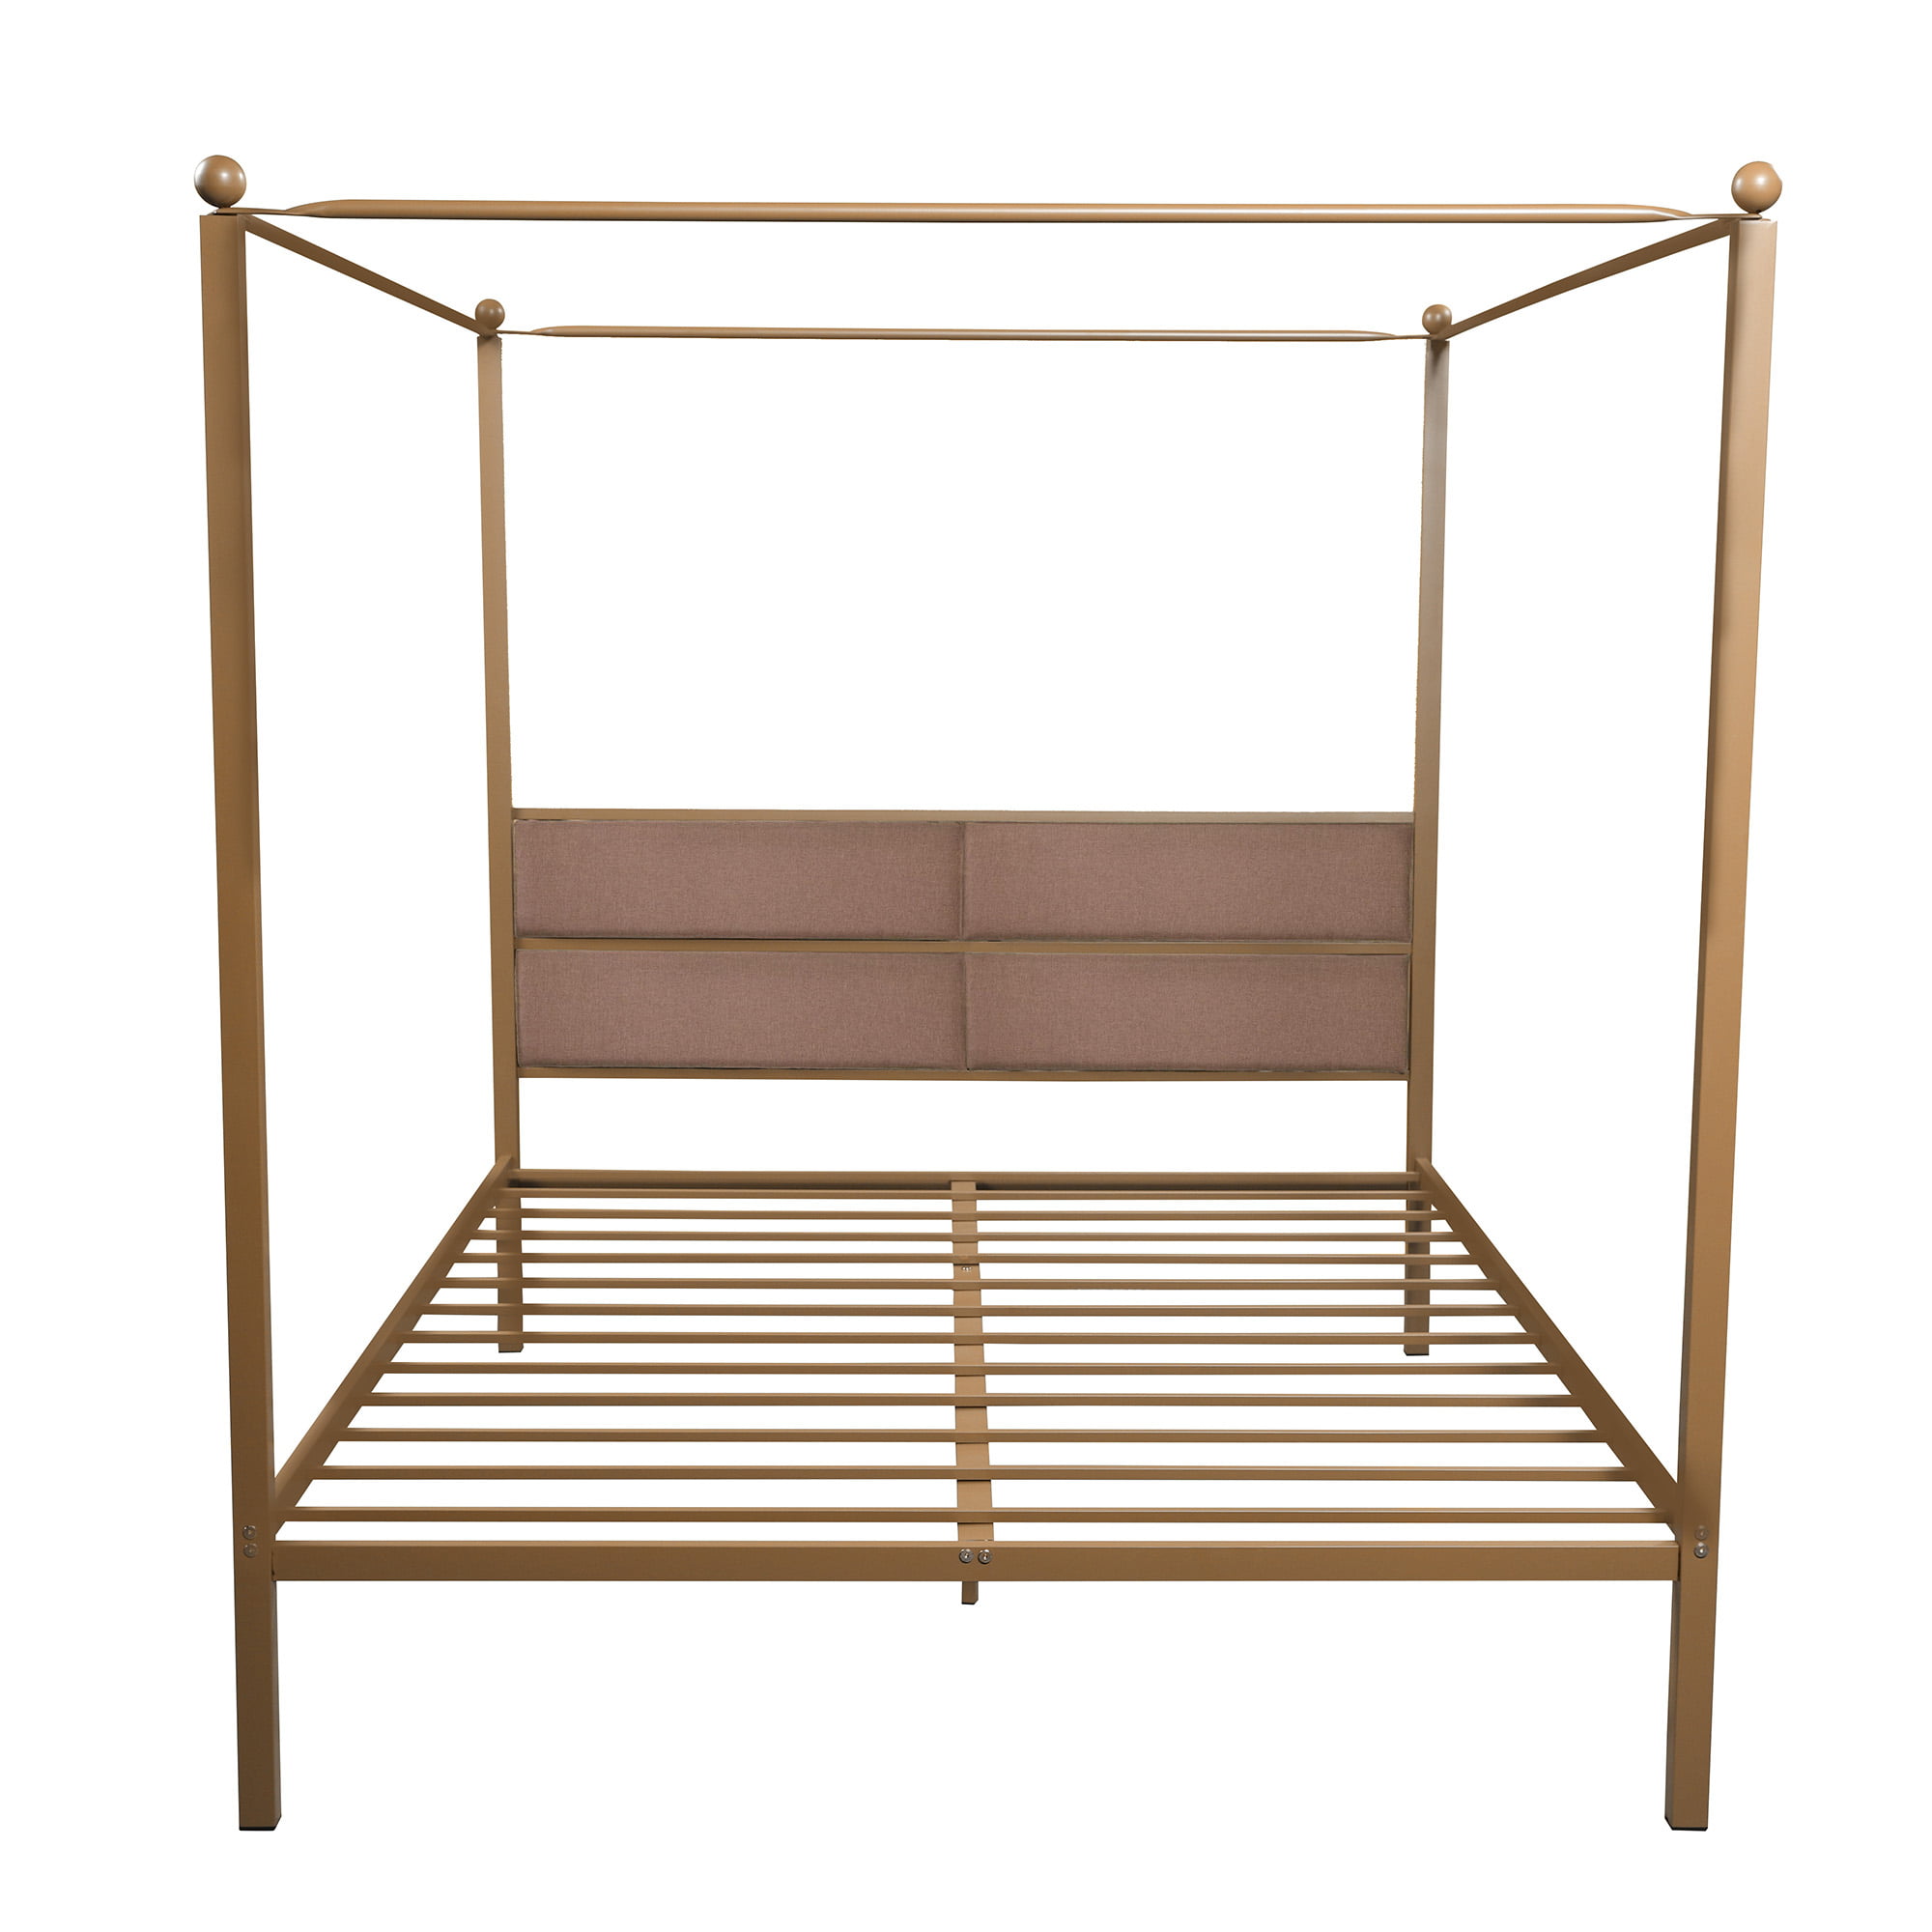 Kirinsport Canopy Bed Frame Queen Size, 4 Corner Bed Frame